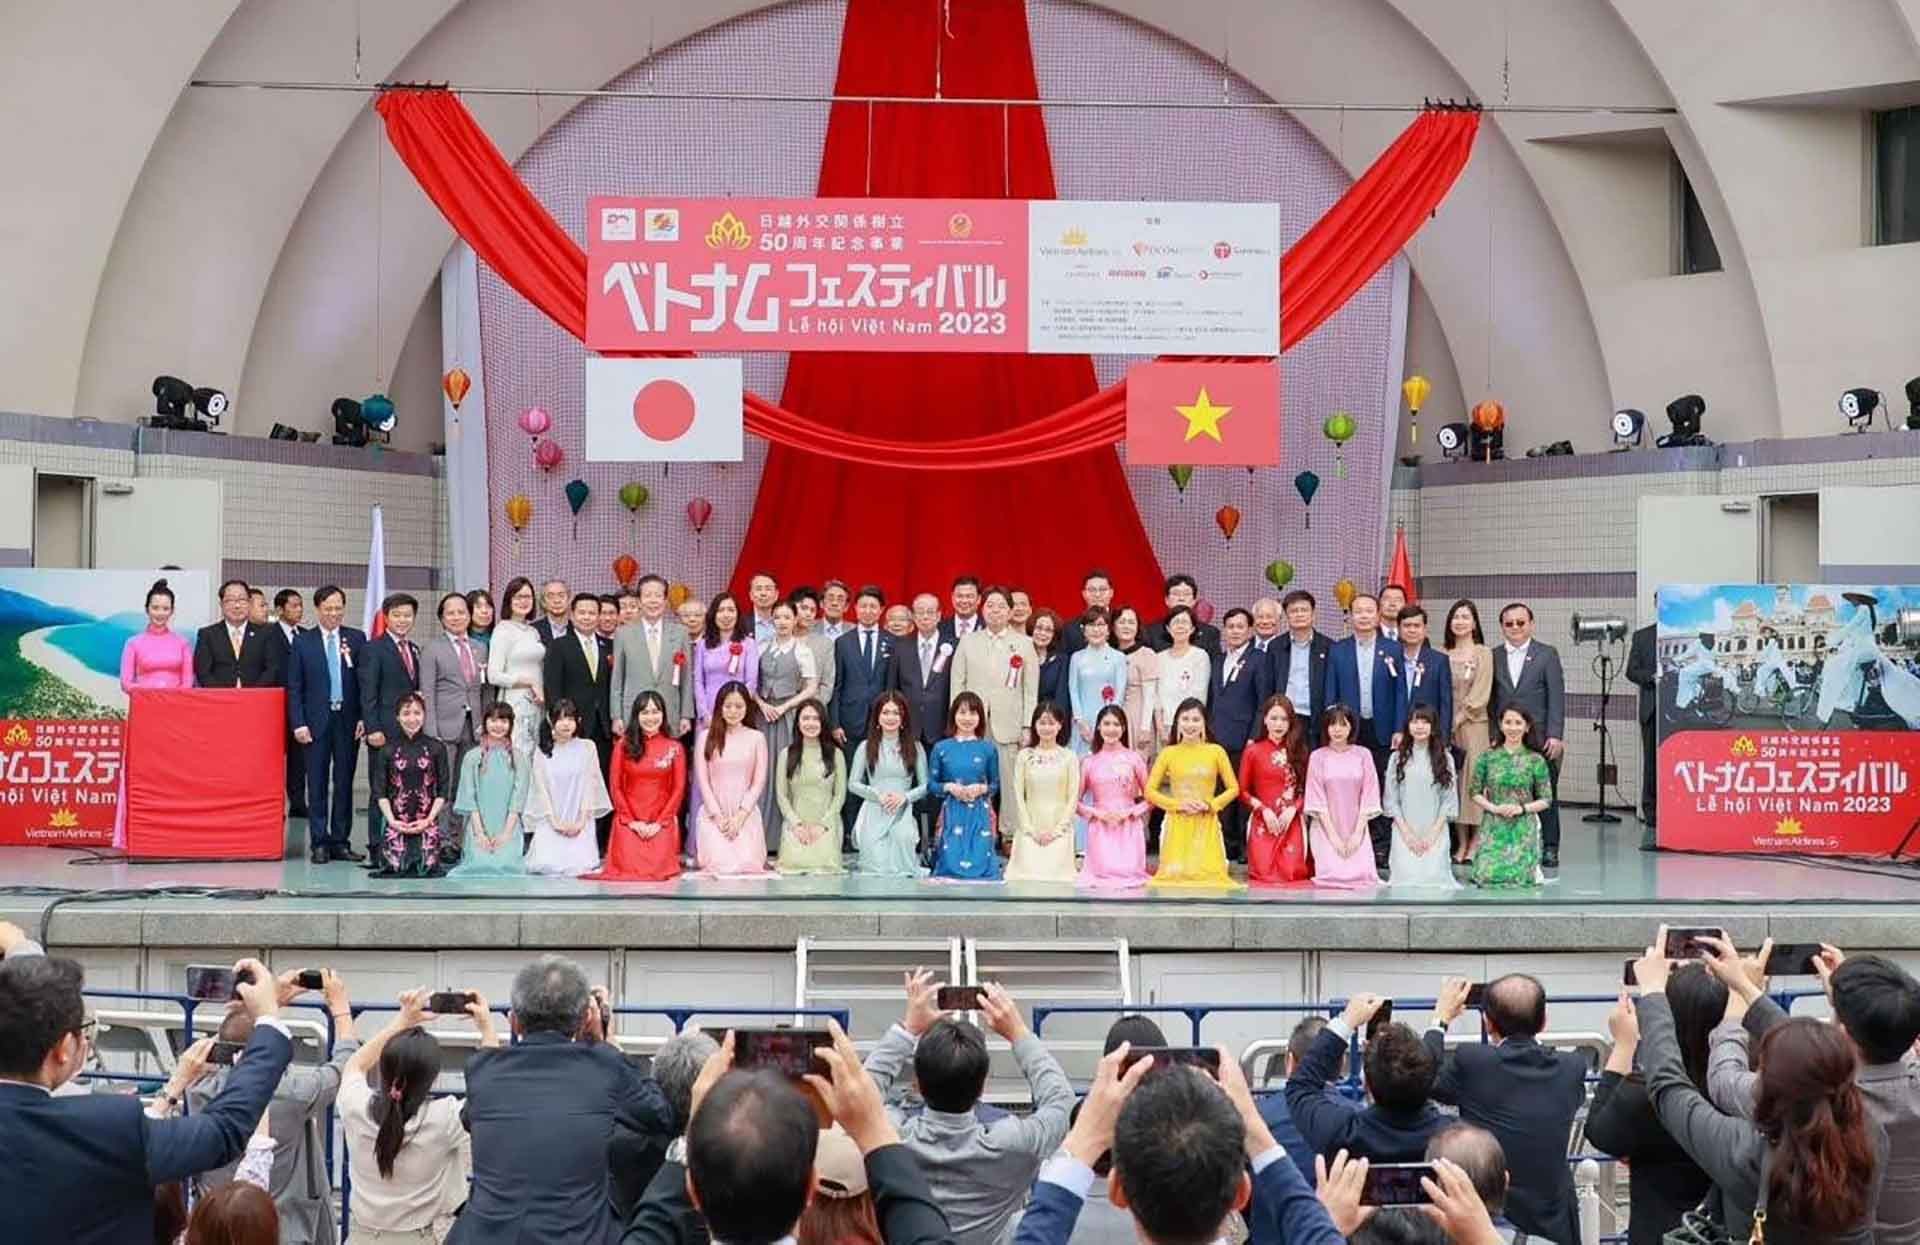 Lễ hội Việt Nam 2023 với chủ đề “Hy vọng” được tổ chức tại Công viên Yoyogi, Tokyo, Nhật Bản ngày 3-4/6.